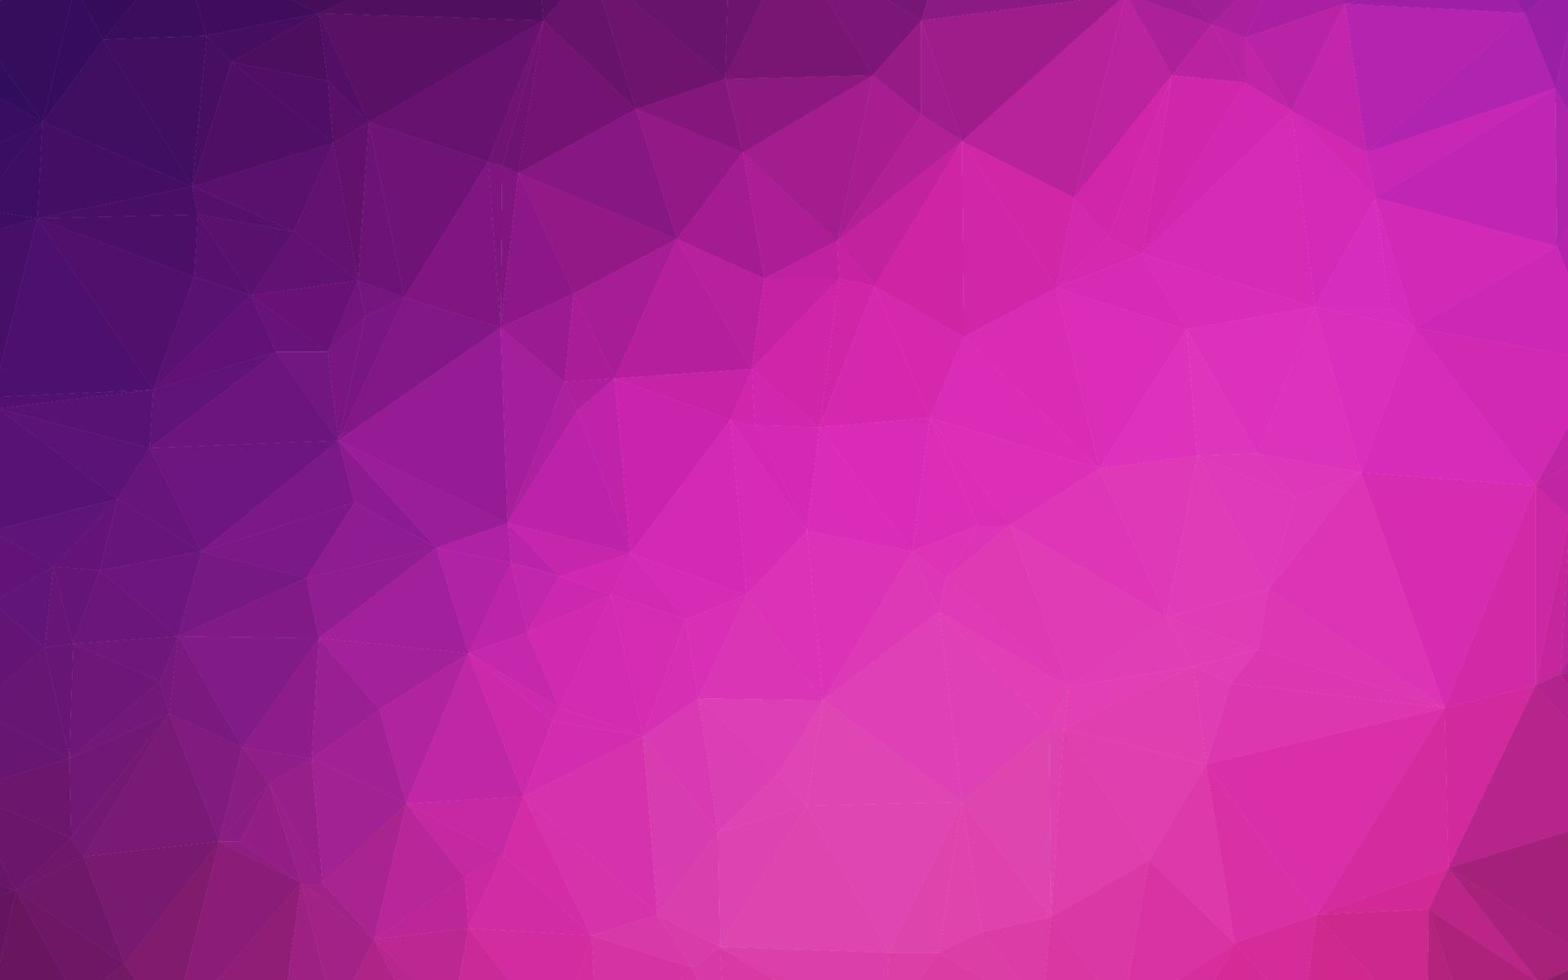 couverture polygonale abstraite de vecteur rose foncé.